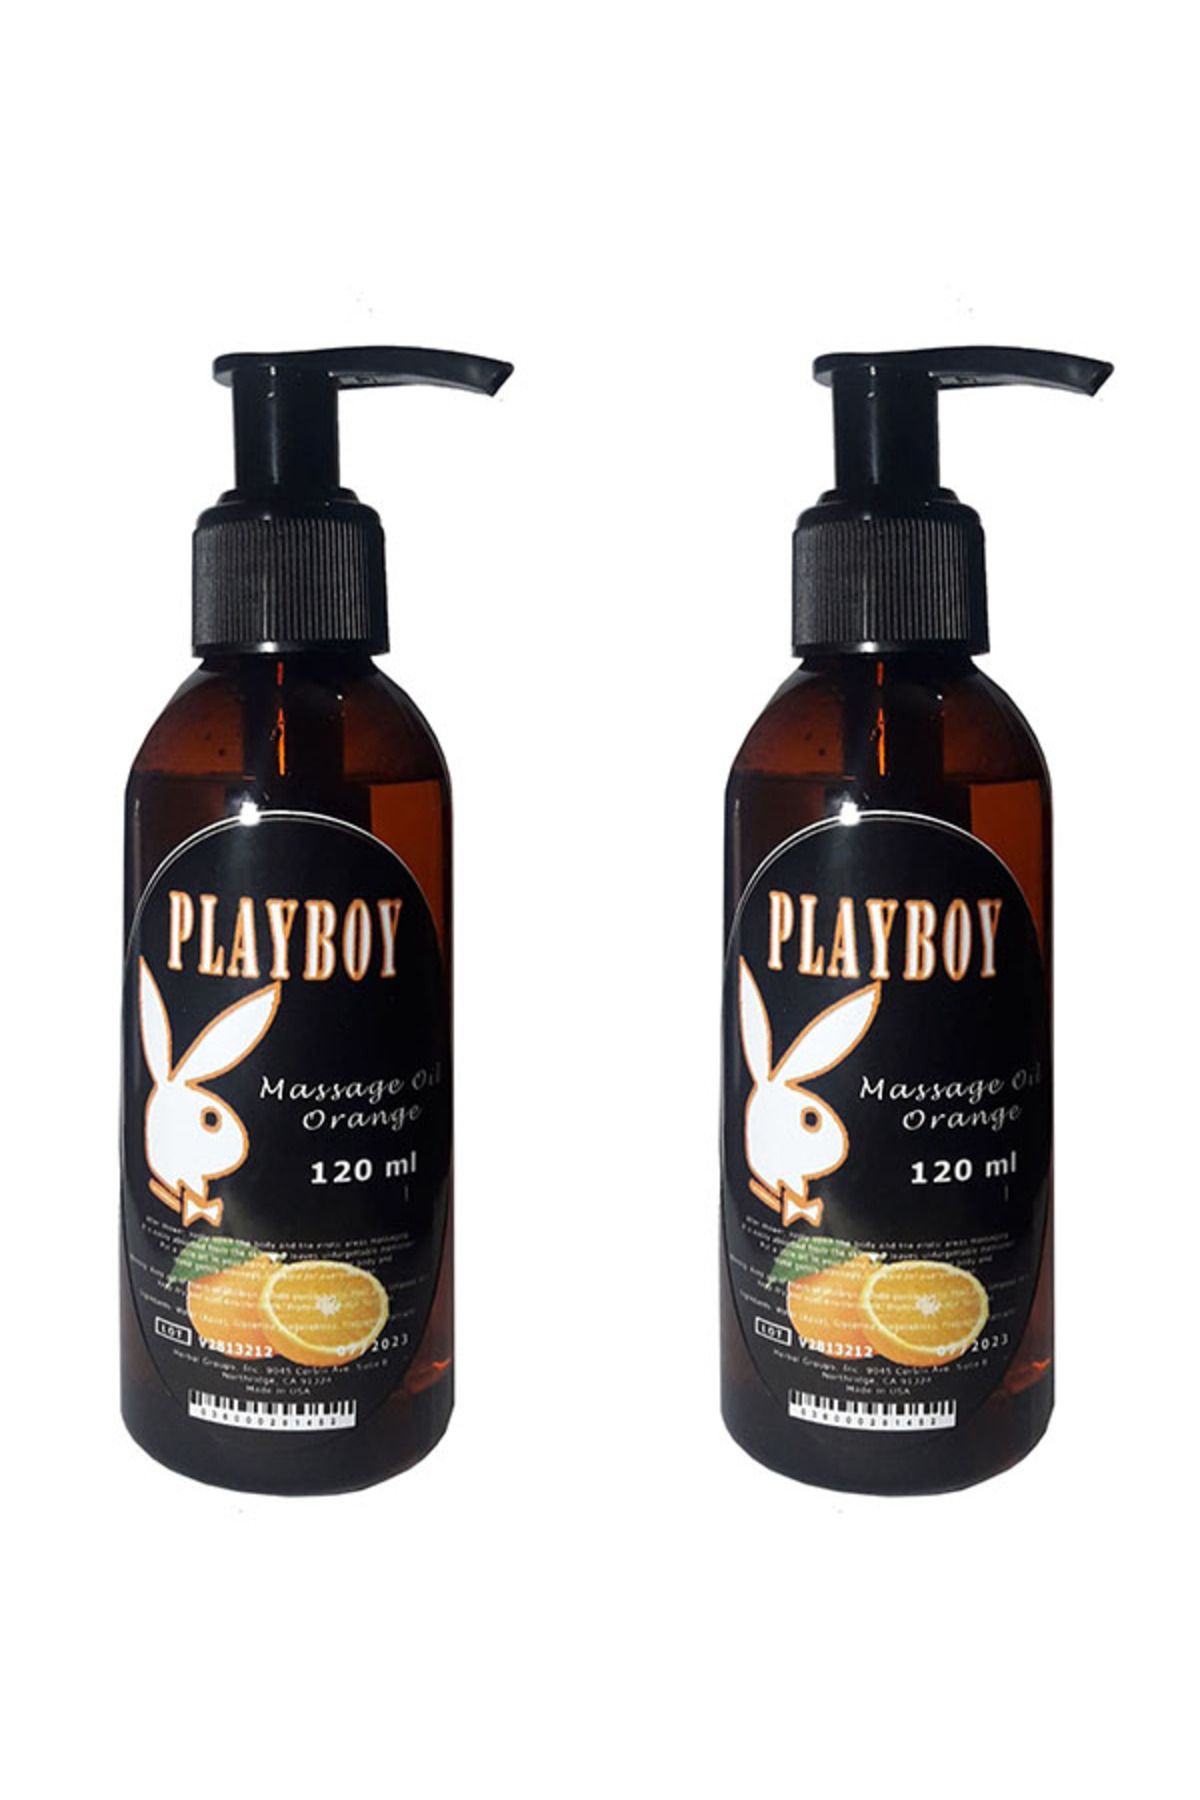 Playboy Portakal Aromalı Vücut Masaj Yağı 120 ml X 2 AD